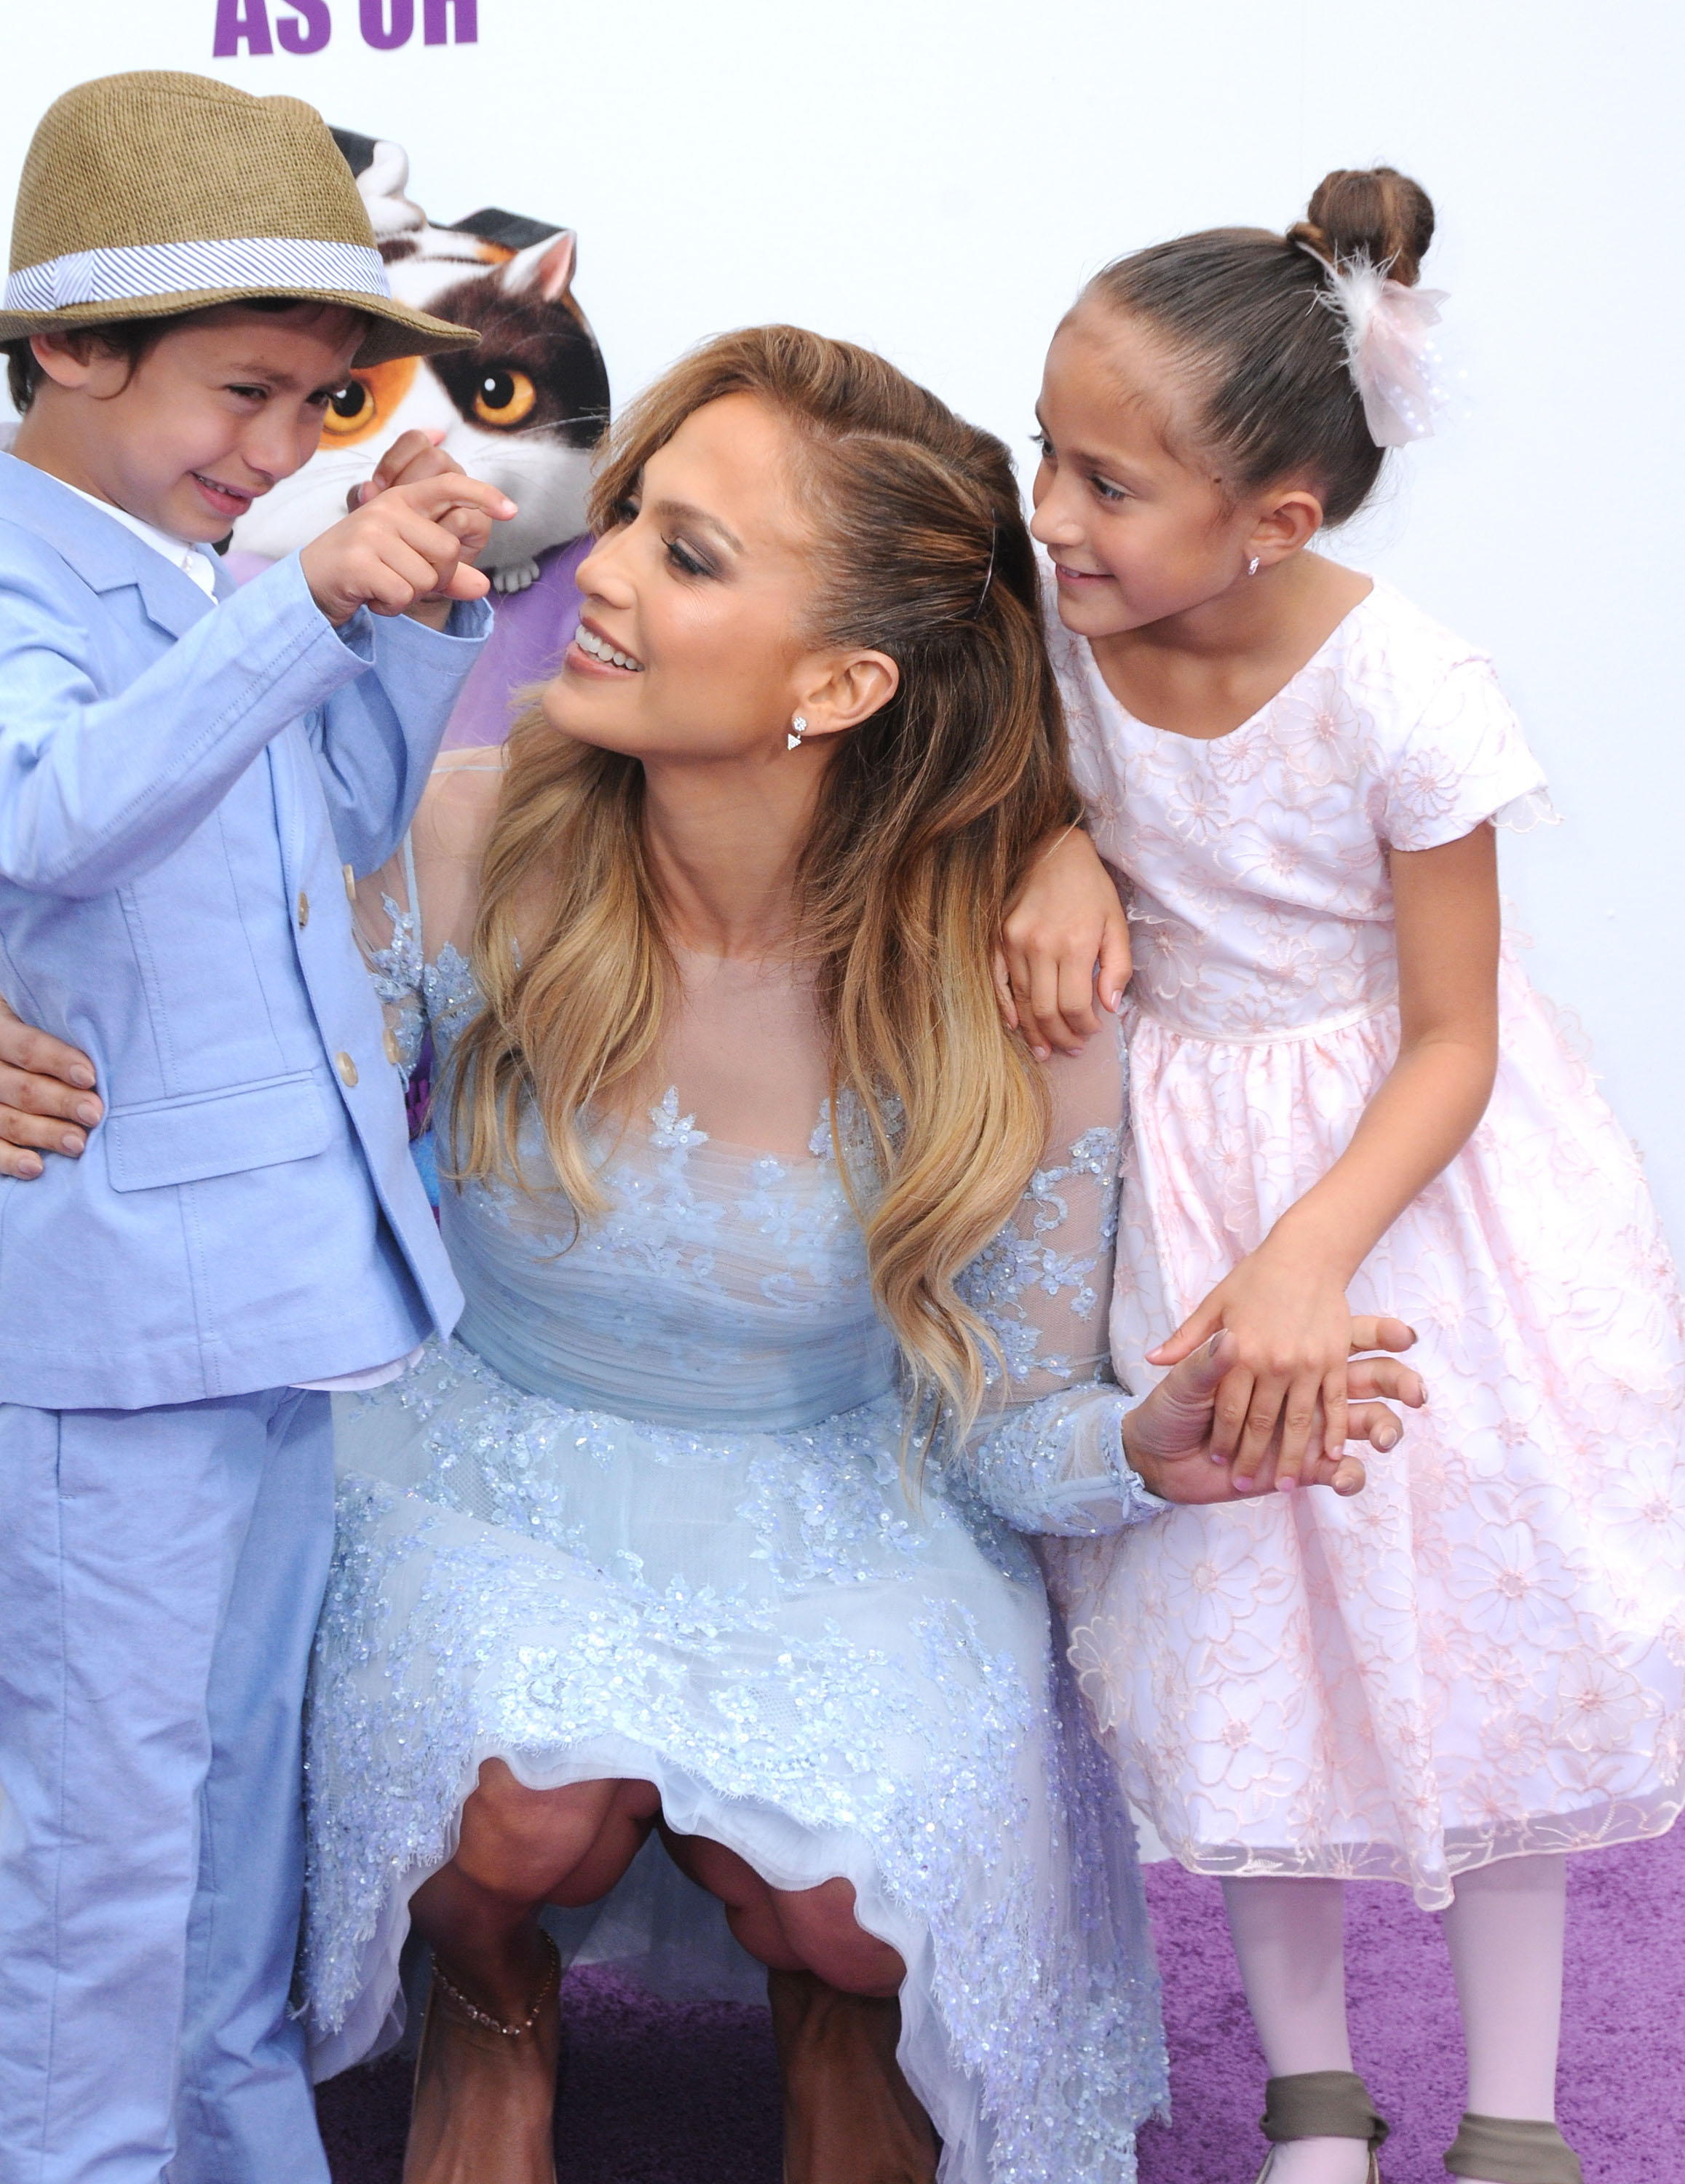 Jennifer Lopez, acompañada por su hijo Maximillian David Muniz y su hija Emme Maribel Muniz, en el estreno de "Home", de Twentieth Century Fox y Dreamworks Animation, el 22 de marzo de 2015, en Westwood, California | Foto: Getty Images